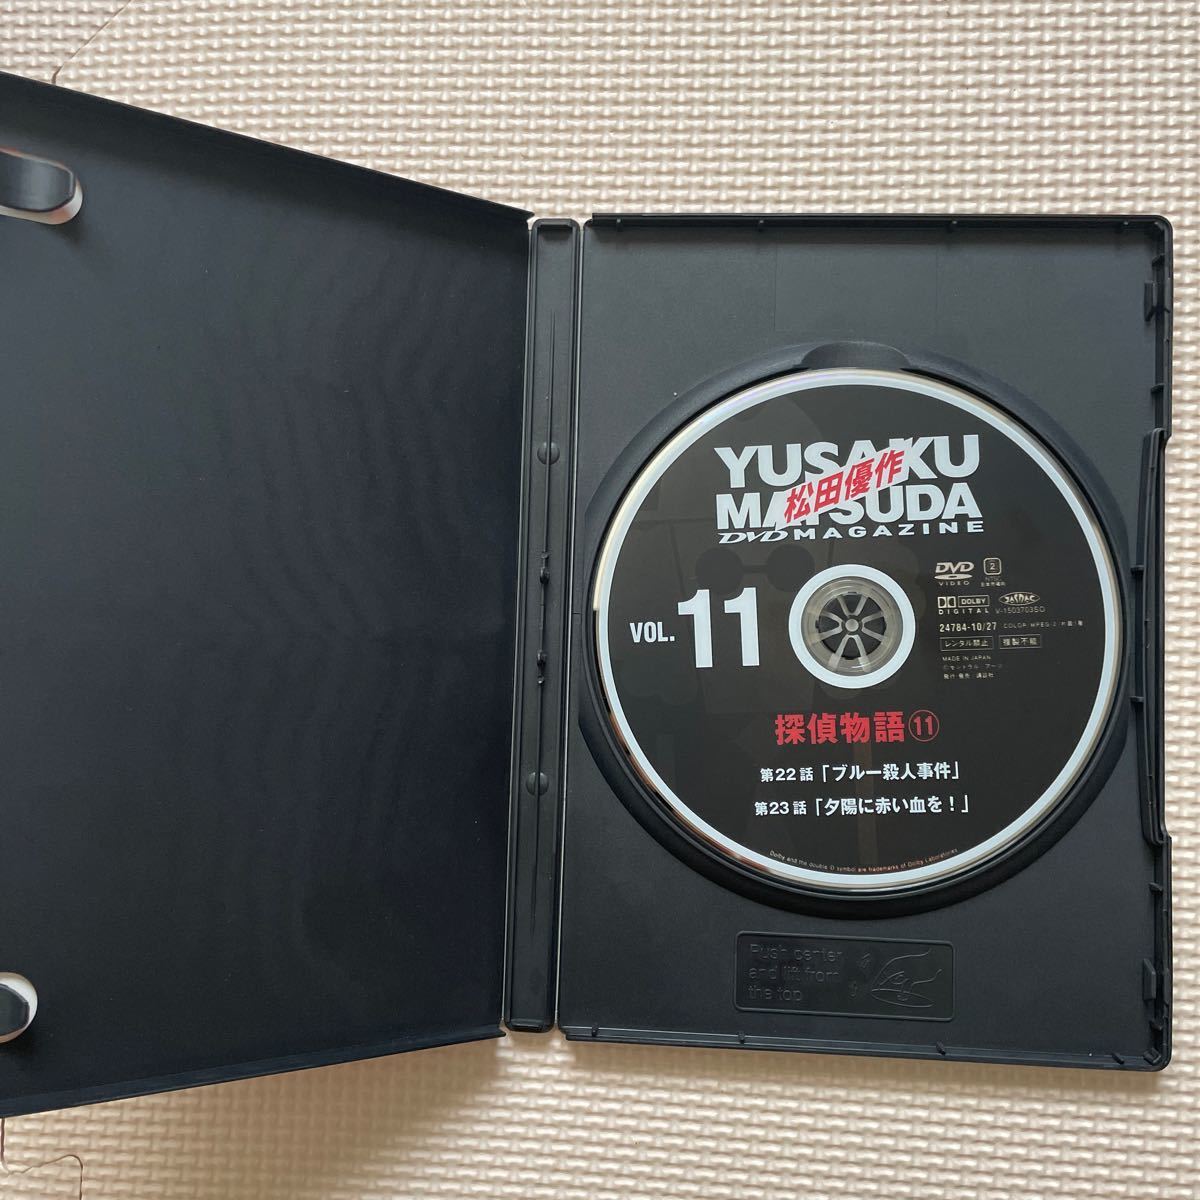  включая доставку Matsuda Yusaku DVD журнал Vol.11.. история 11